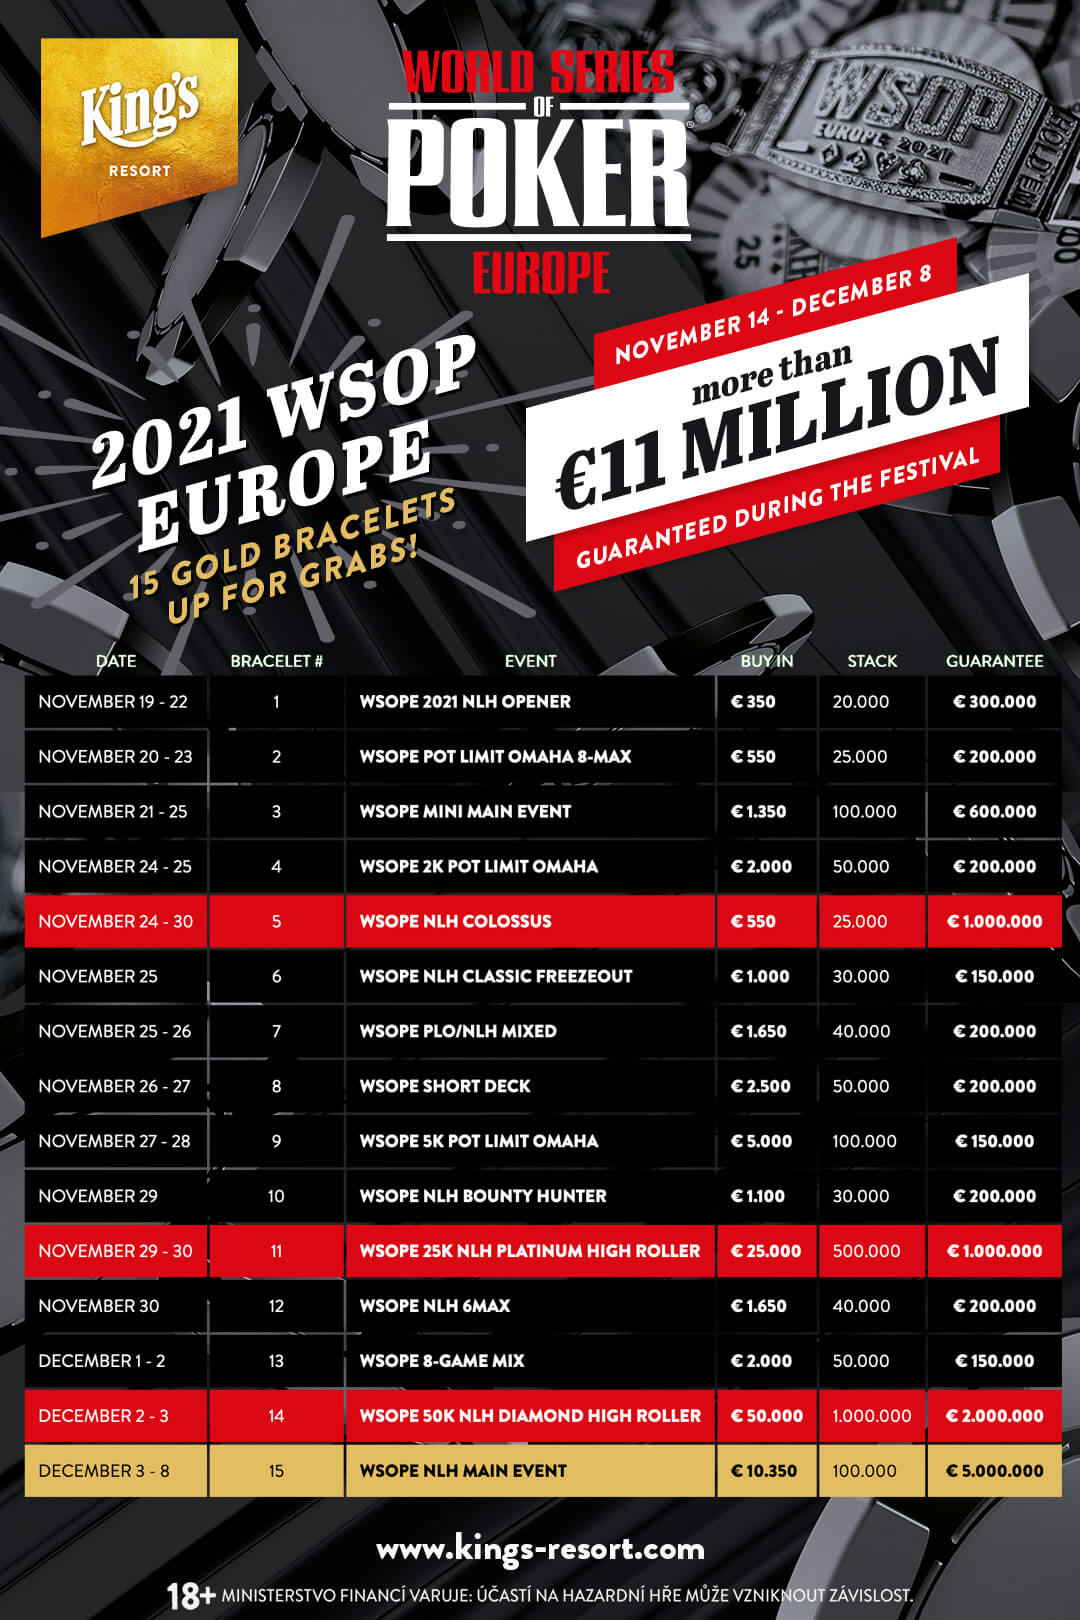 2021 WSOP EUROPE SCHEDULE